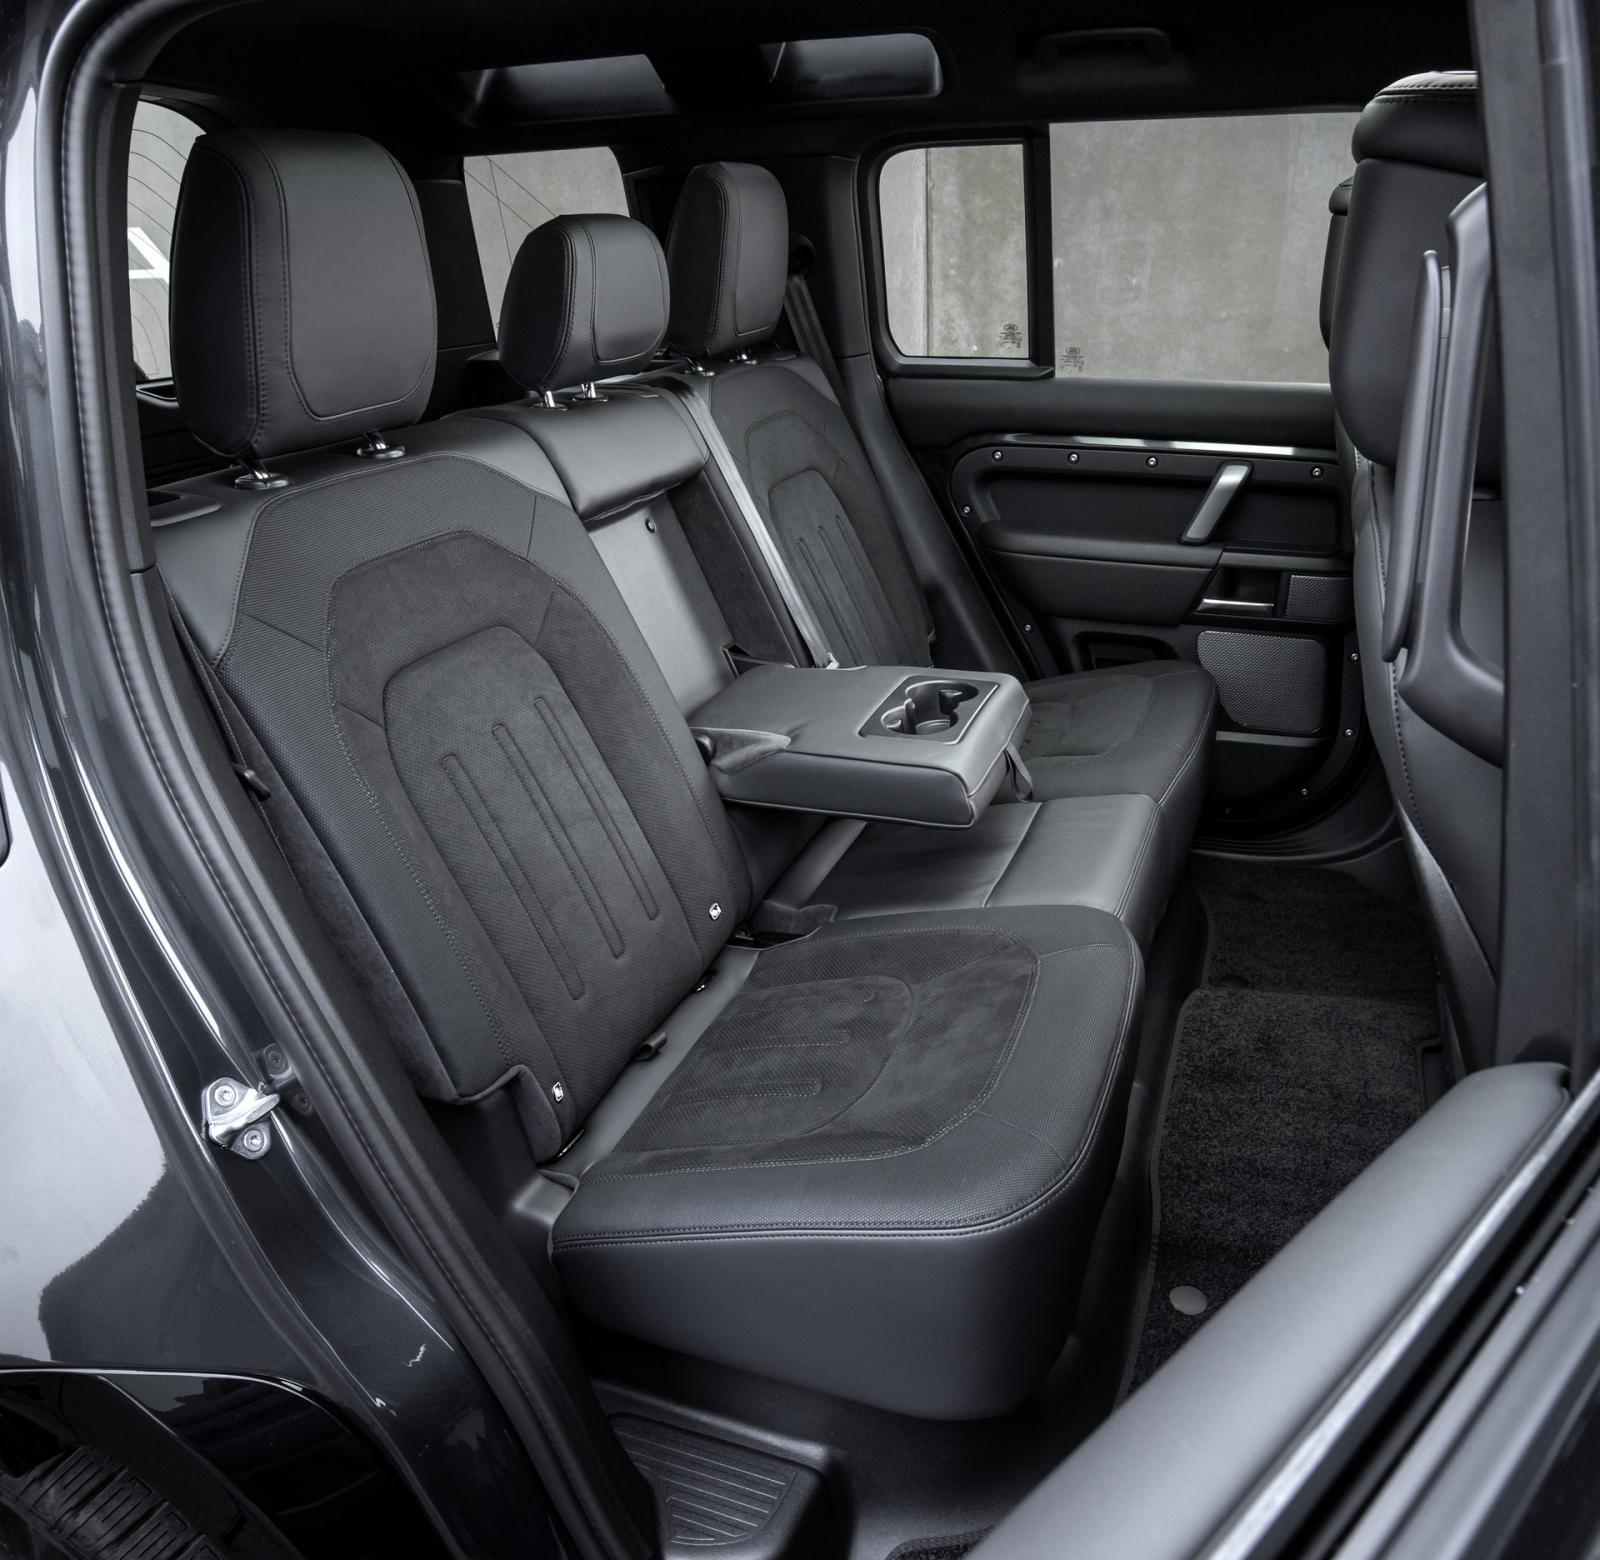 Land Rover Defender 2021 hứa hẹn cung cấp trải nghiệm cực đỉnh.